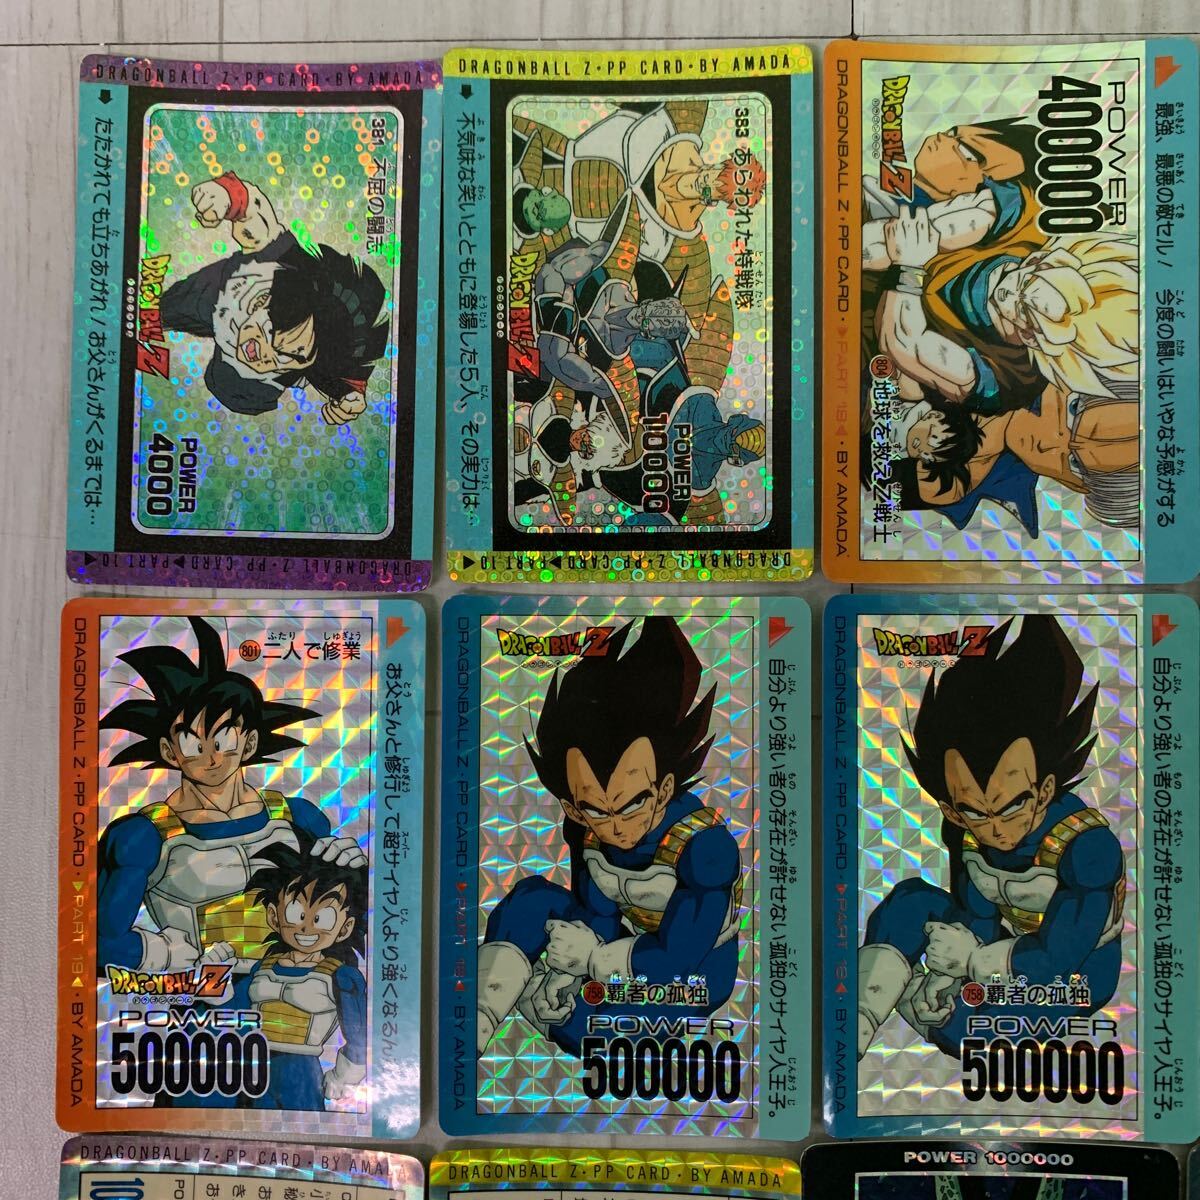  Amada Dragon Ball PP карта и т.п. kila карта примерно 33 листов продажа комплектом 